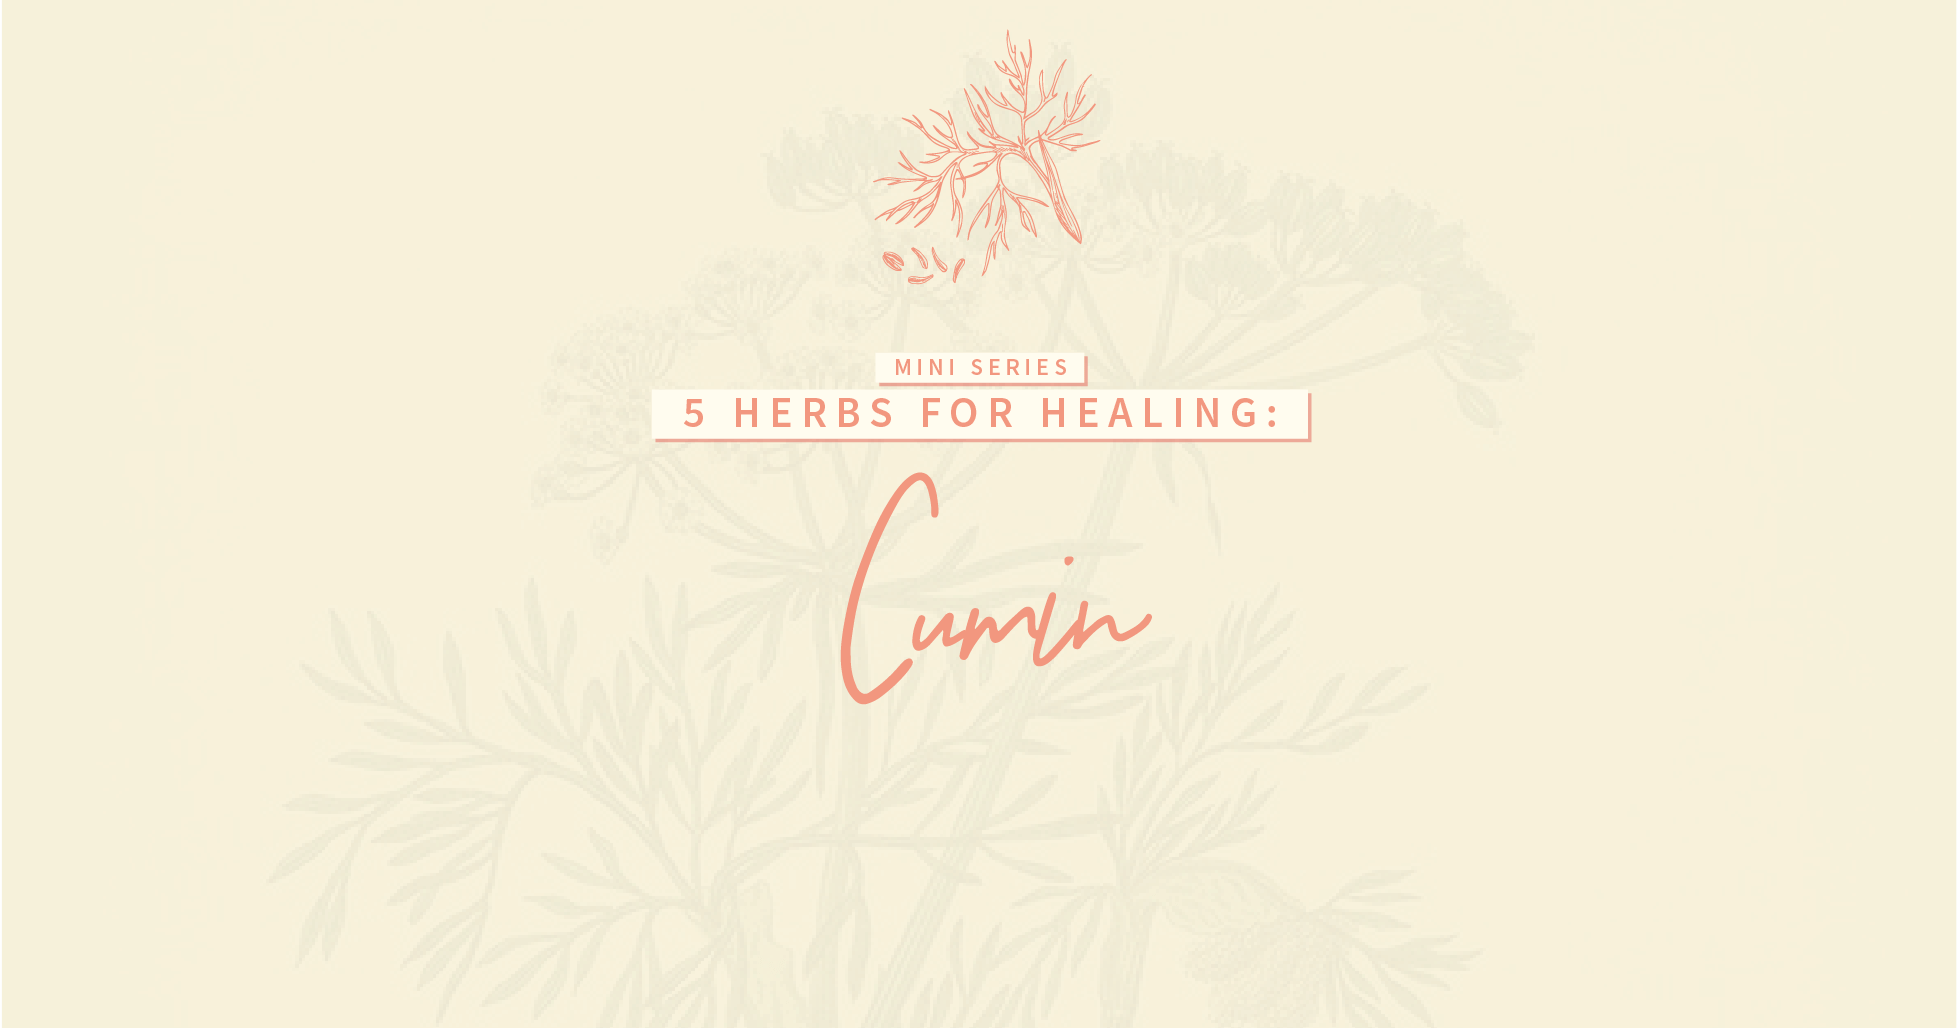 5 Herbs for Healing: Cumin